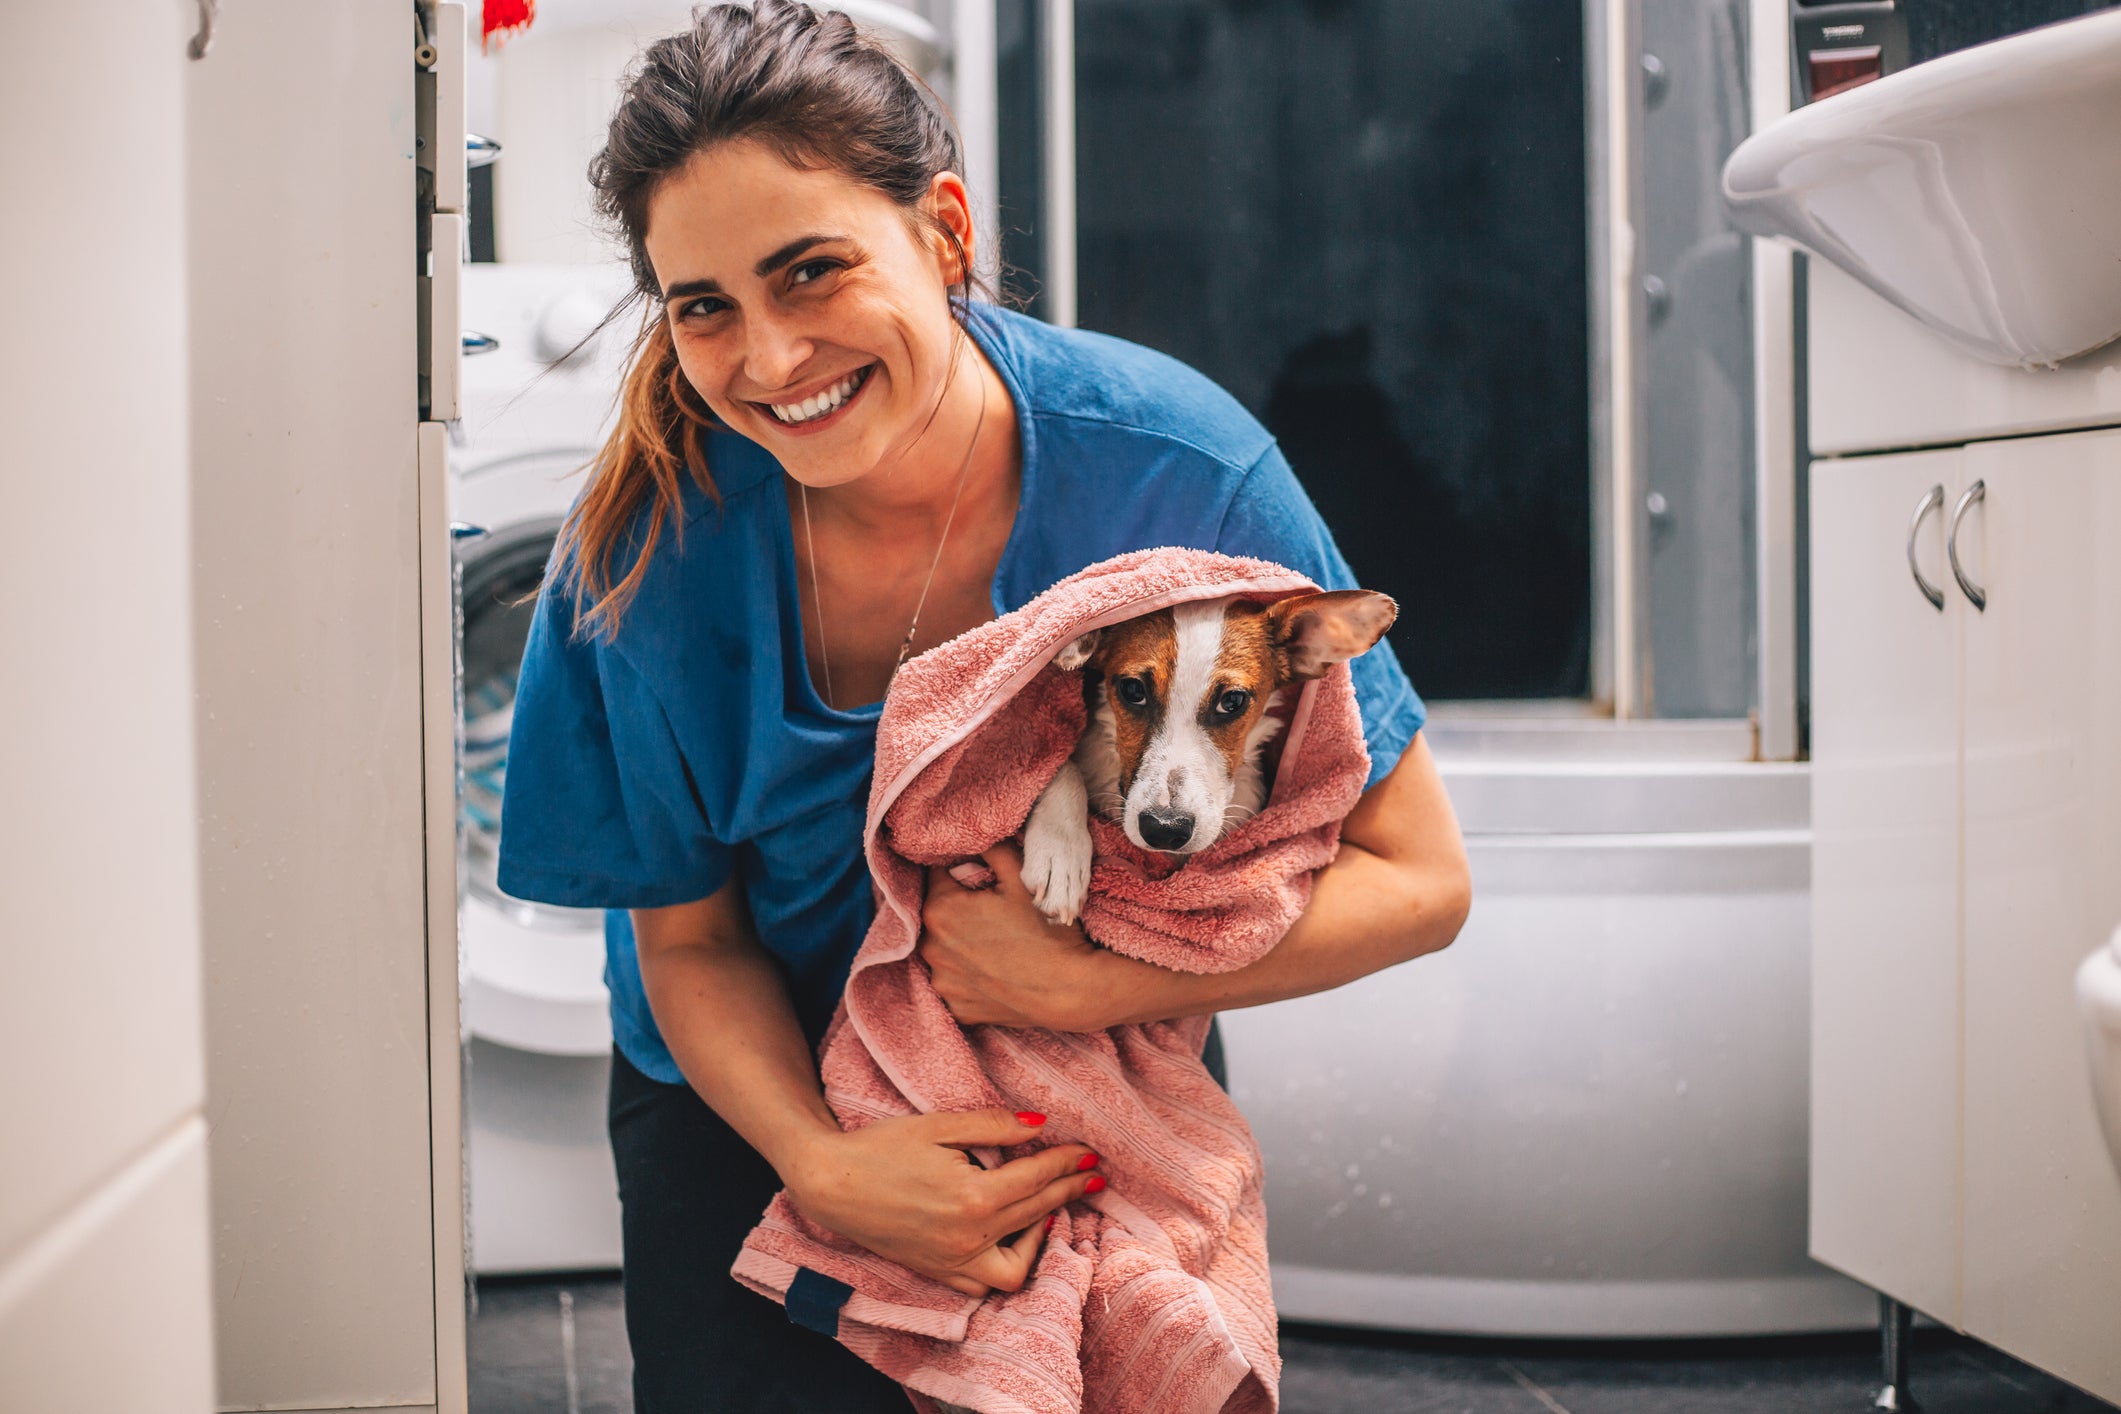 Tutora sorrindo segurando cachorro enrolado em toalha